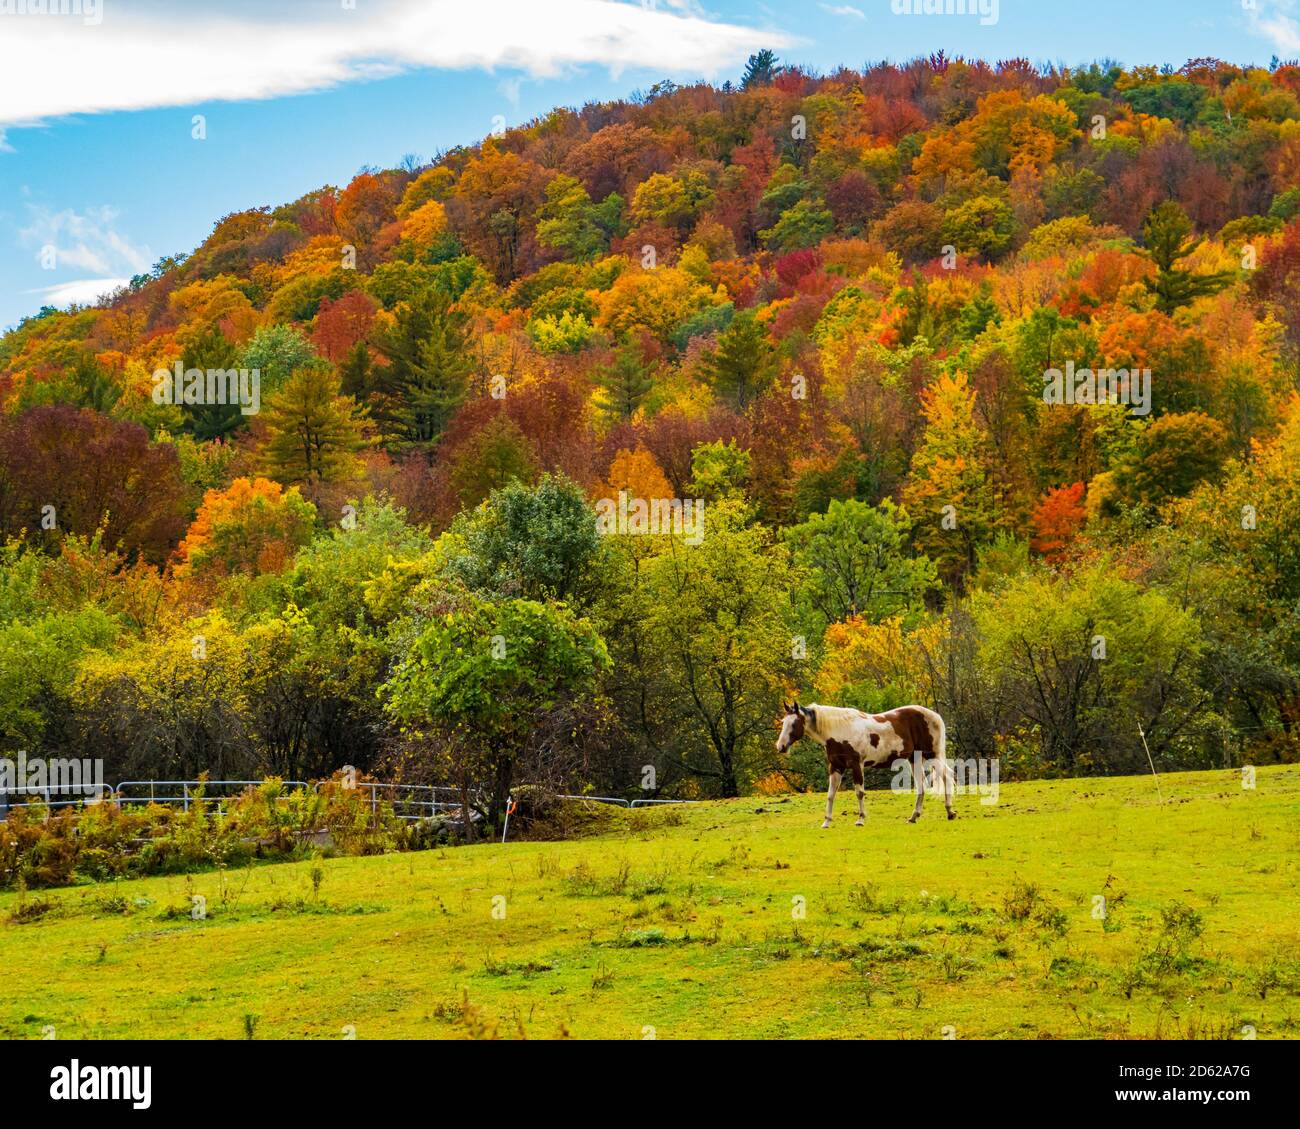 caballo blanco y marrón pastando en el campo con la ladera en colores brillantes del follaje del otoño Foto de stock